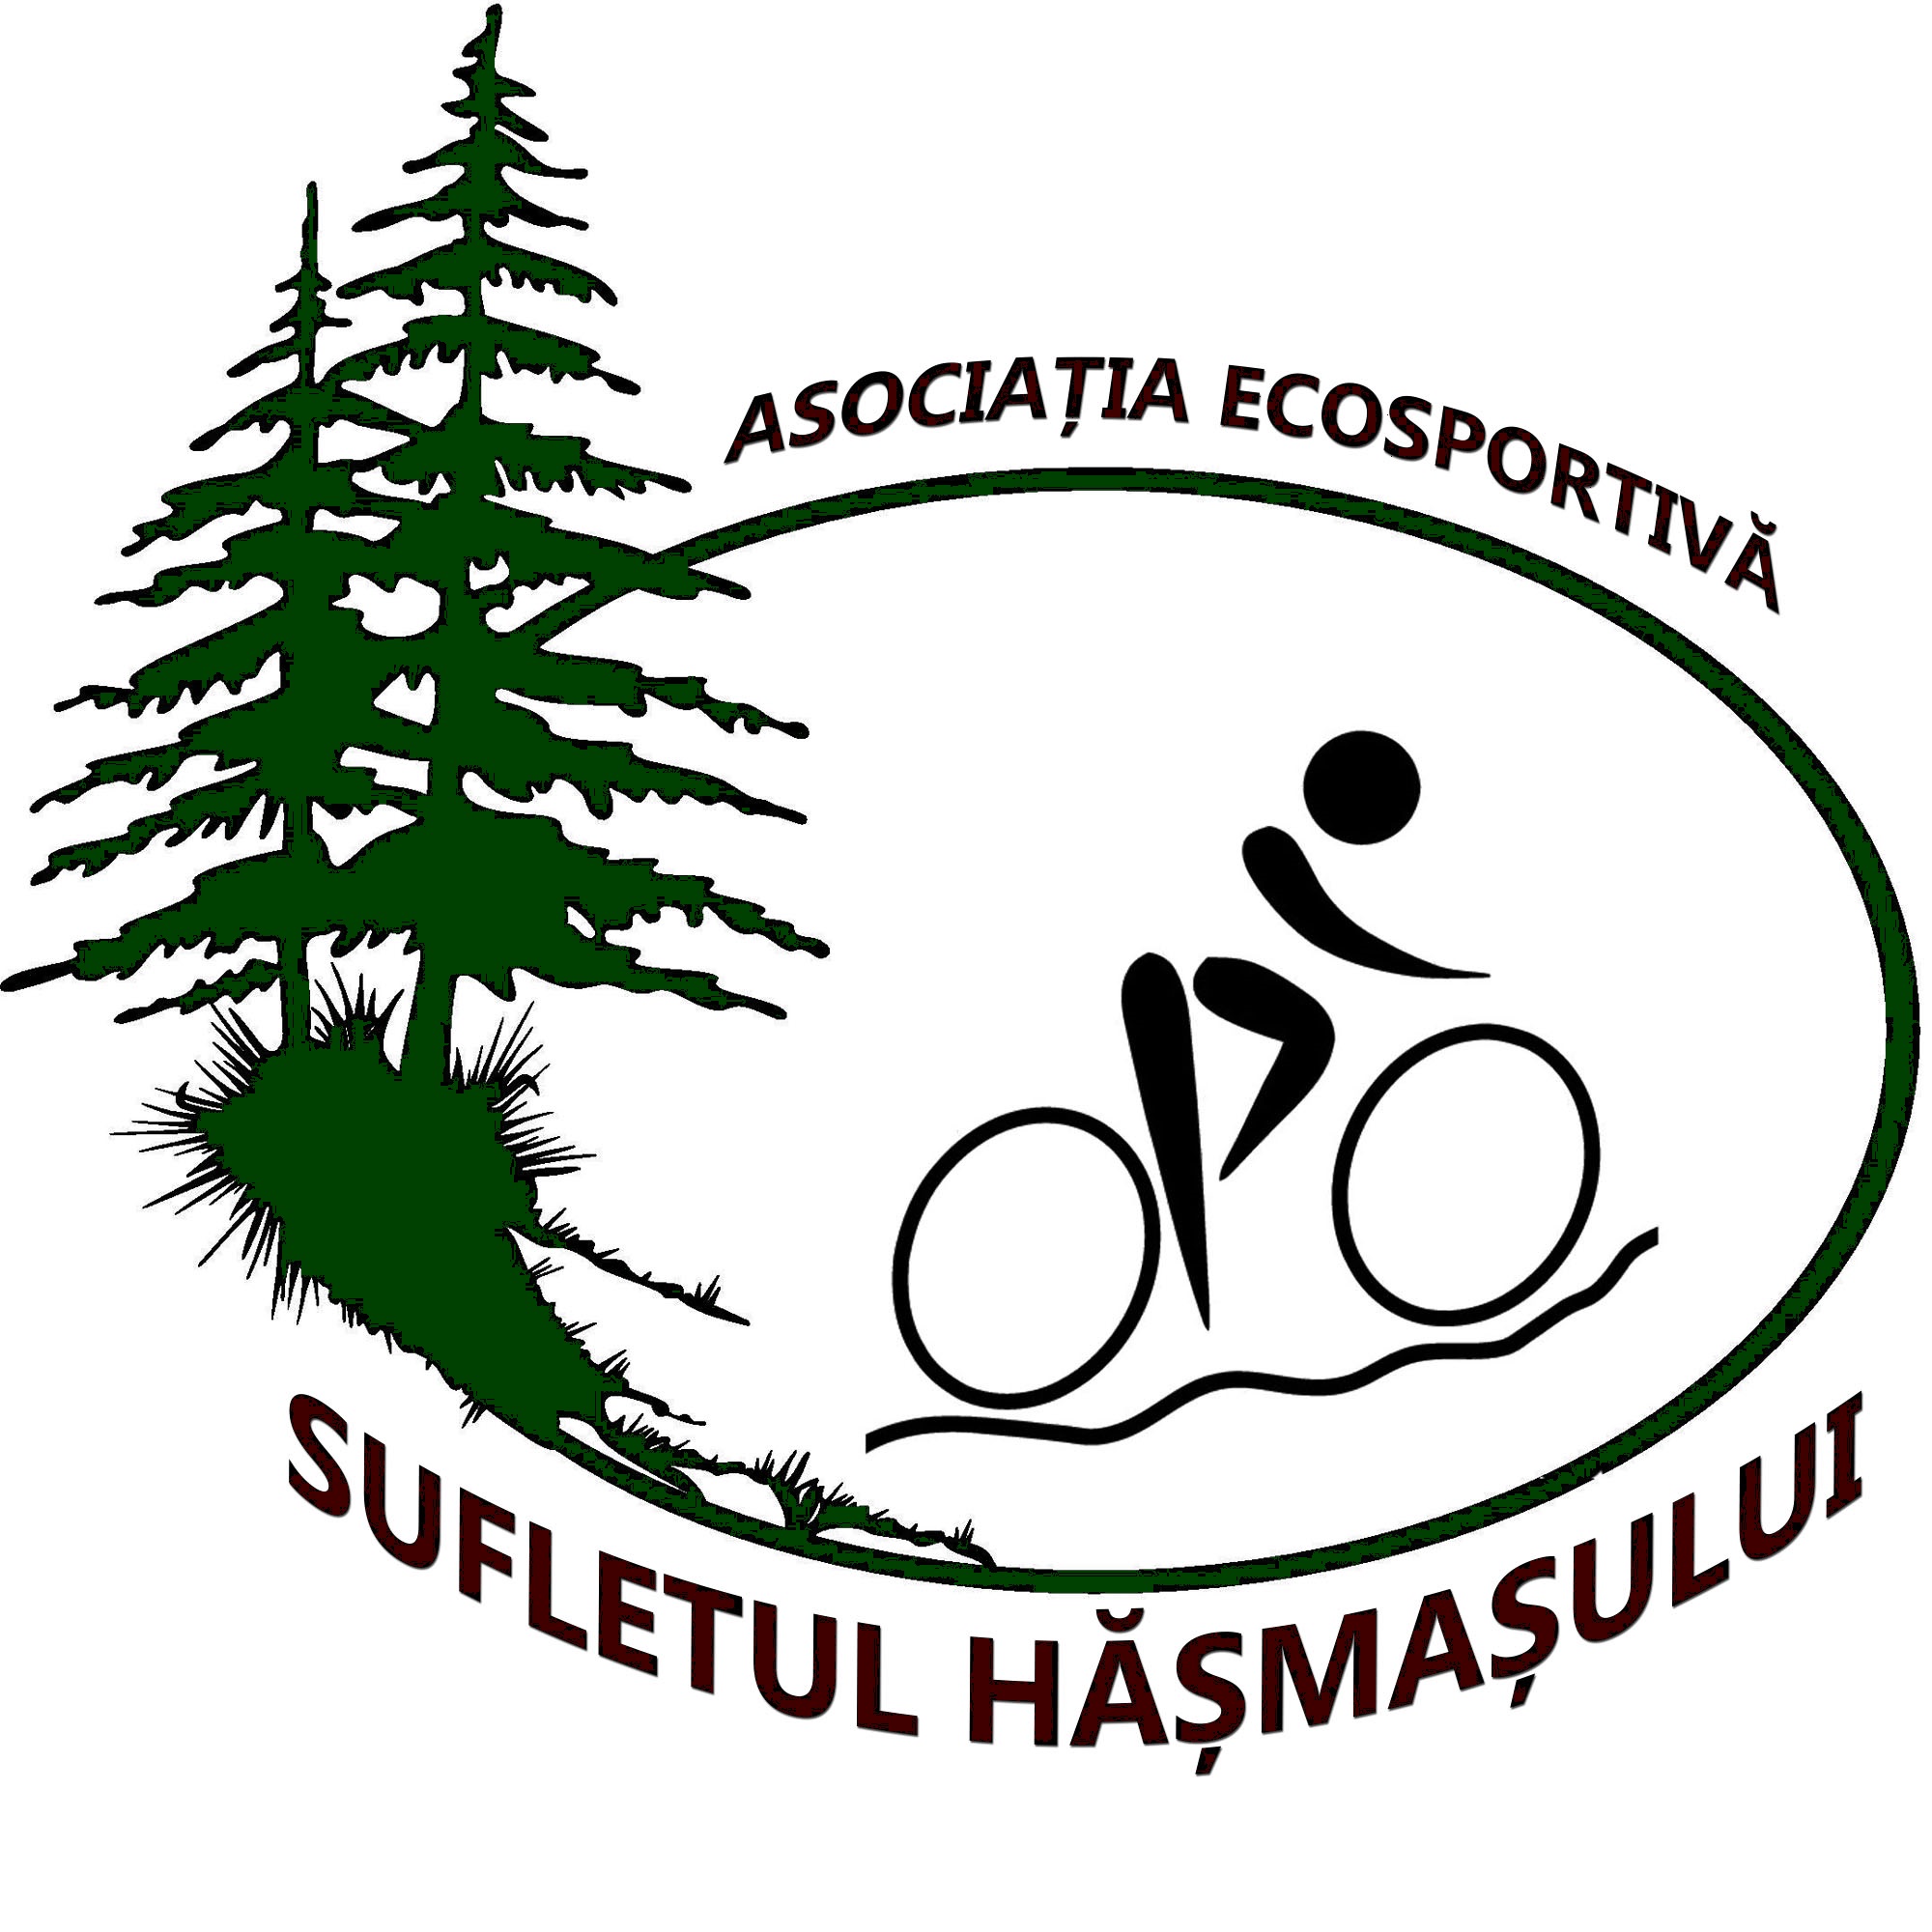 Asociația Ecosportivă Sufletul Hășmașului logo